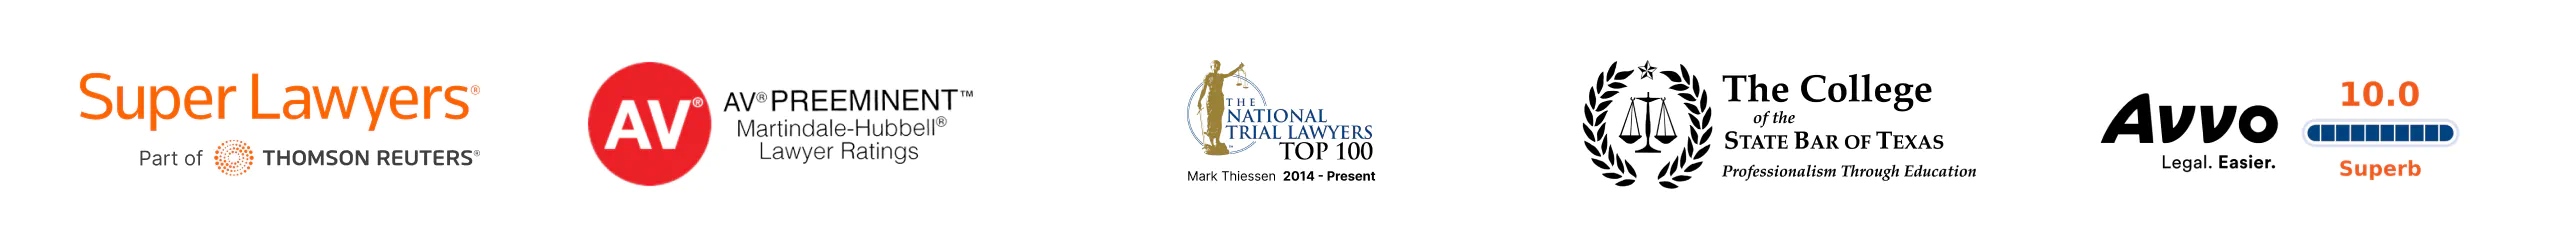 Premios de la compañía: Super Lawyers, AV Preeminente Martindale-Hubbell Abogado Clasificación, The National Trial Lawyers Top 100, Avvo Superb 10.0 Clasificación